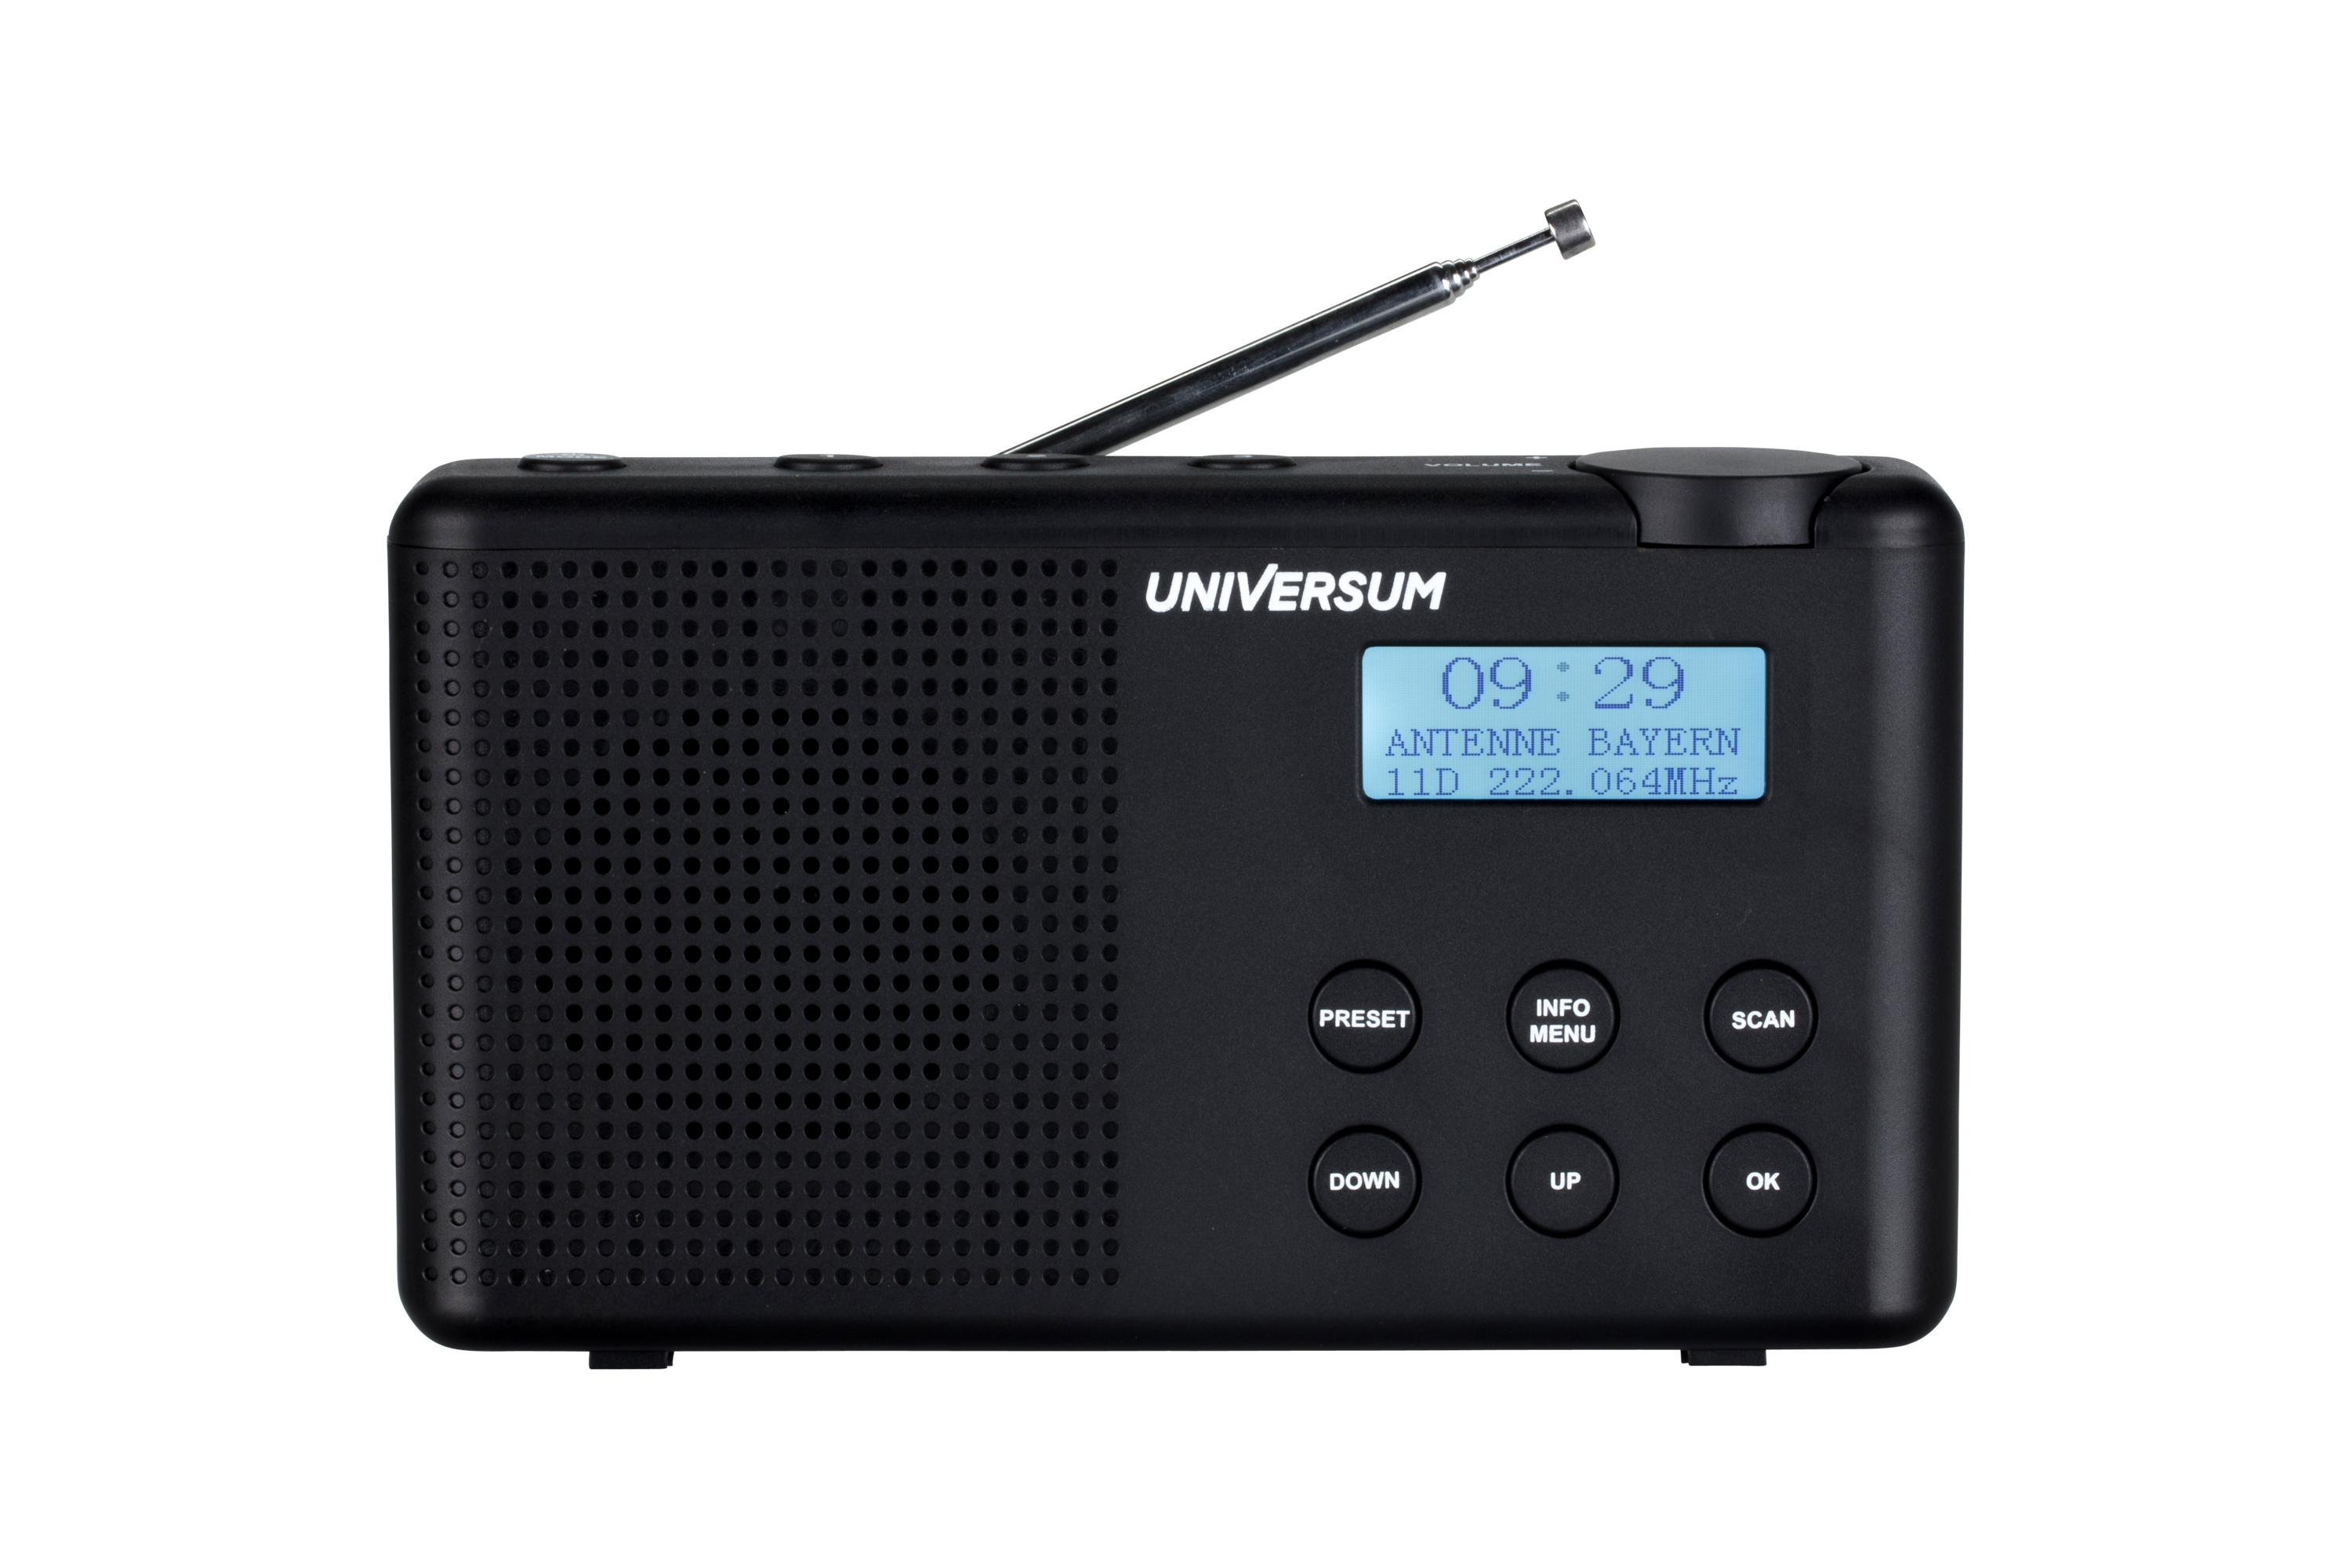 UNIVERSUM DR 200-20 DIGITALRADIO, DAB+, FM, FM, DAB, DAB, schwarz Bluetooth